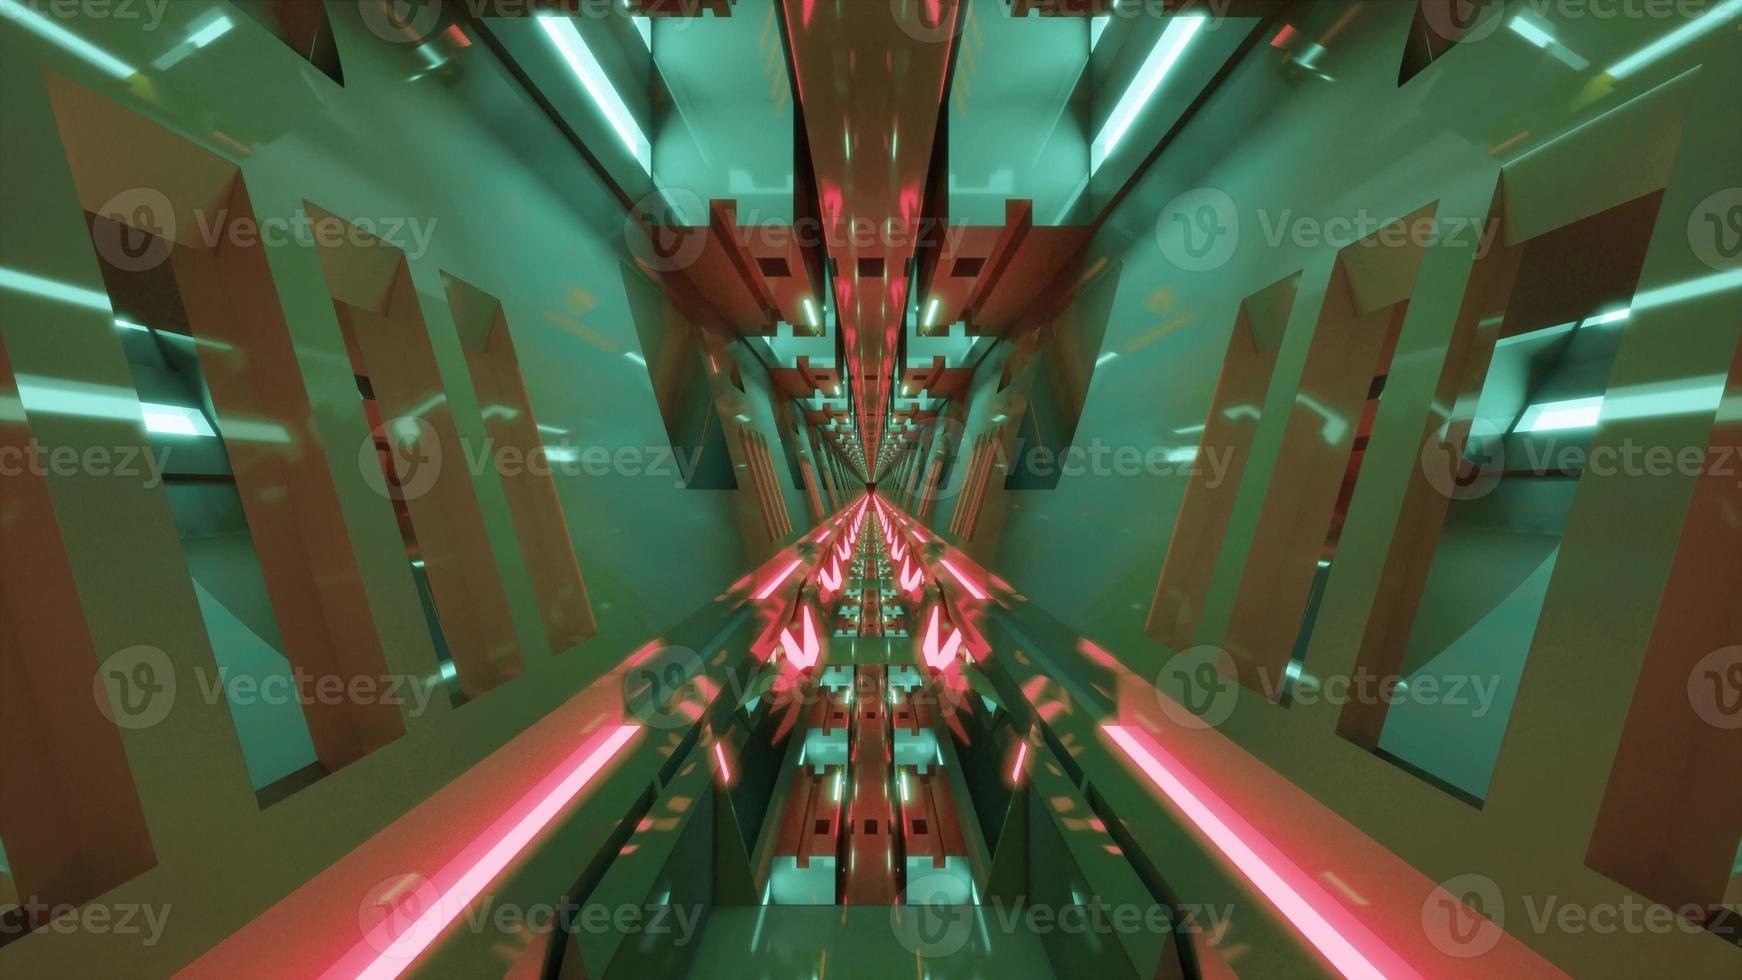 Illustration 3d d'un couloir géométrique avec des murs brillants en qualité 4k uhd photo